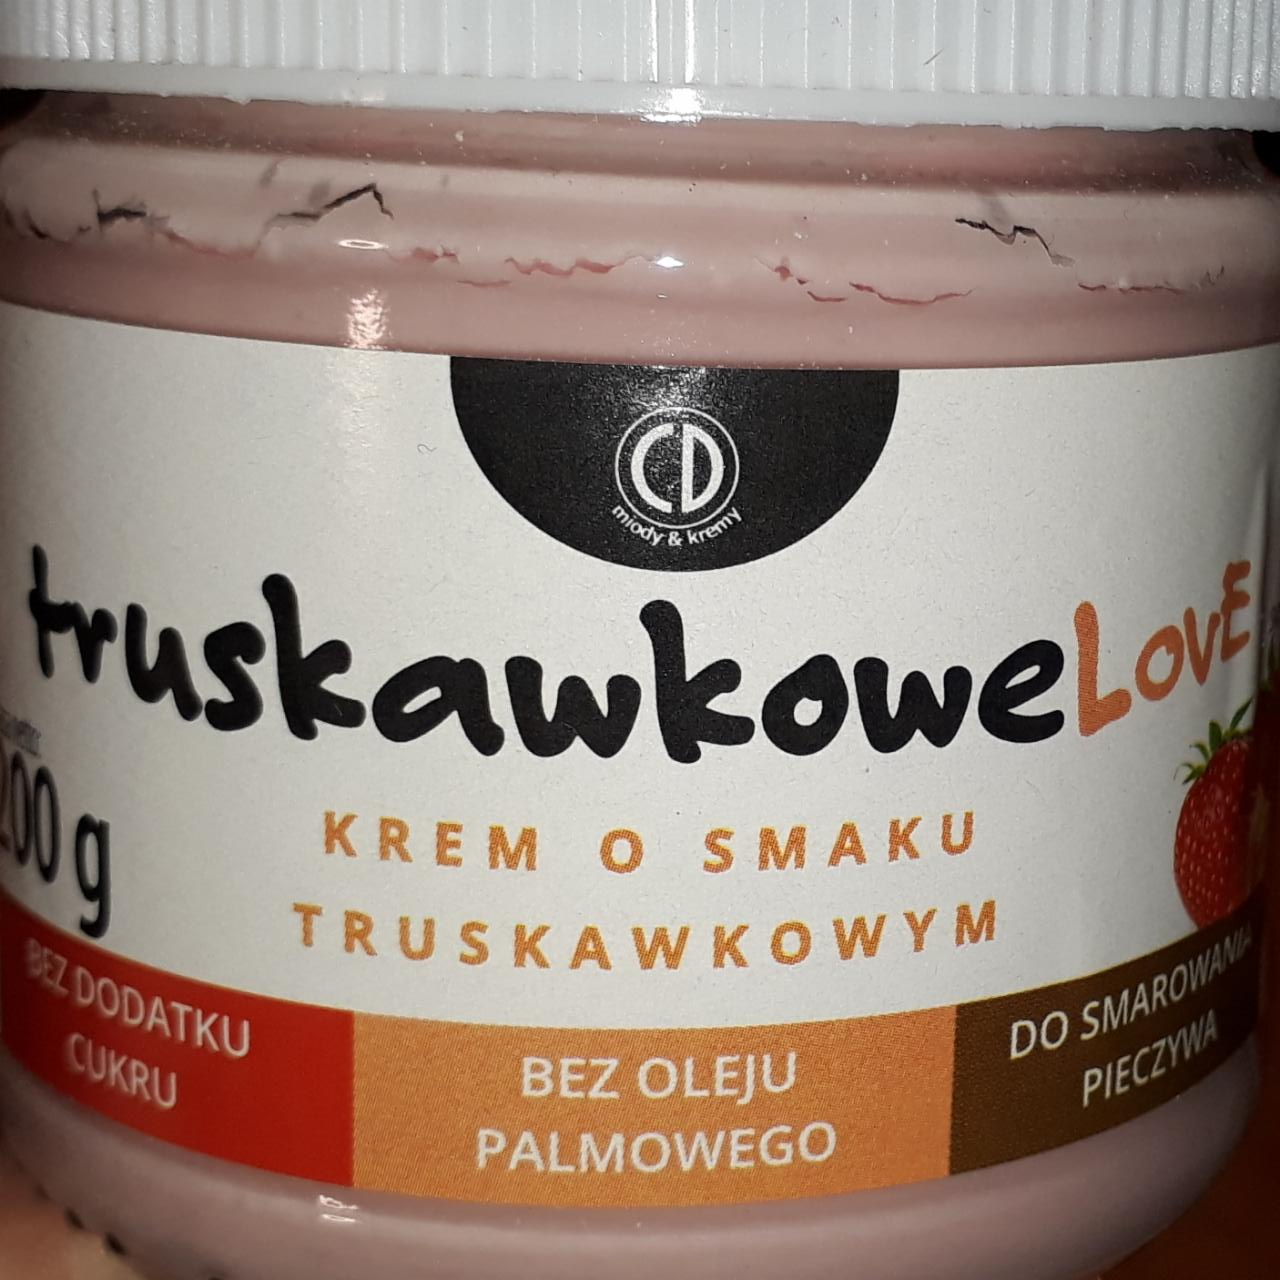 Fotografie - Truskawkowelove krem o smaku truskawkowym CD